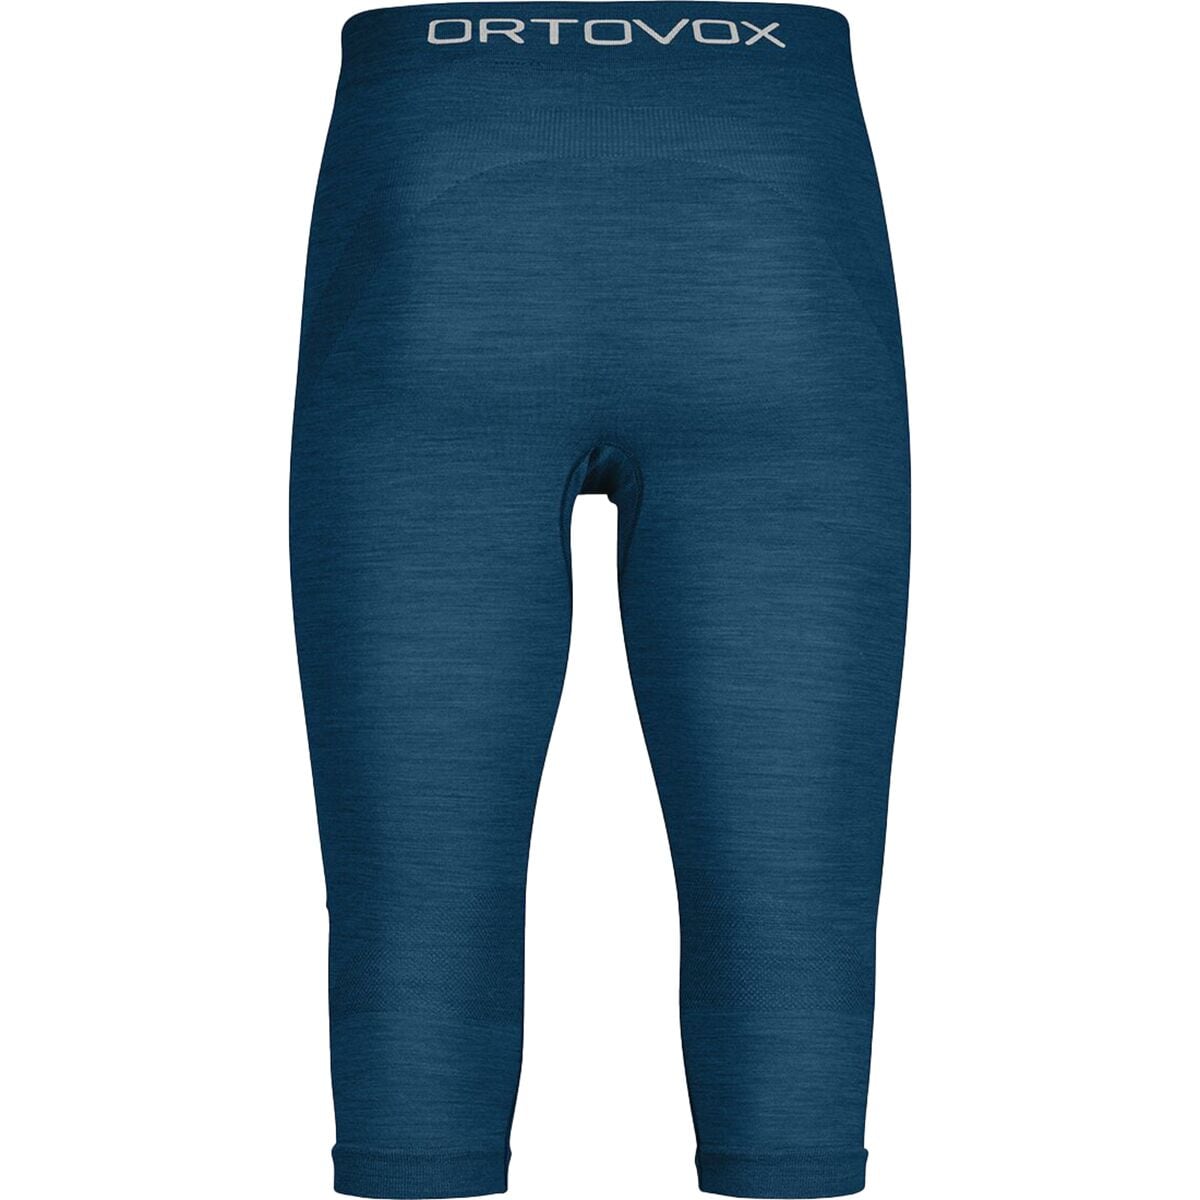 Ortovox 120 Comp Light Short Pant - Men's - Clothing